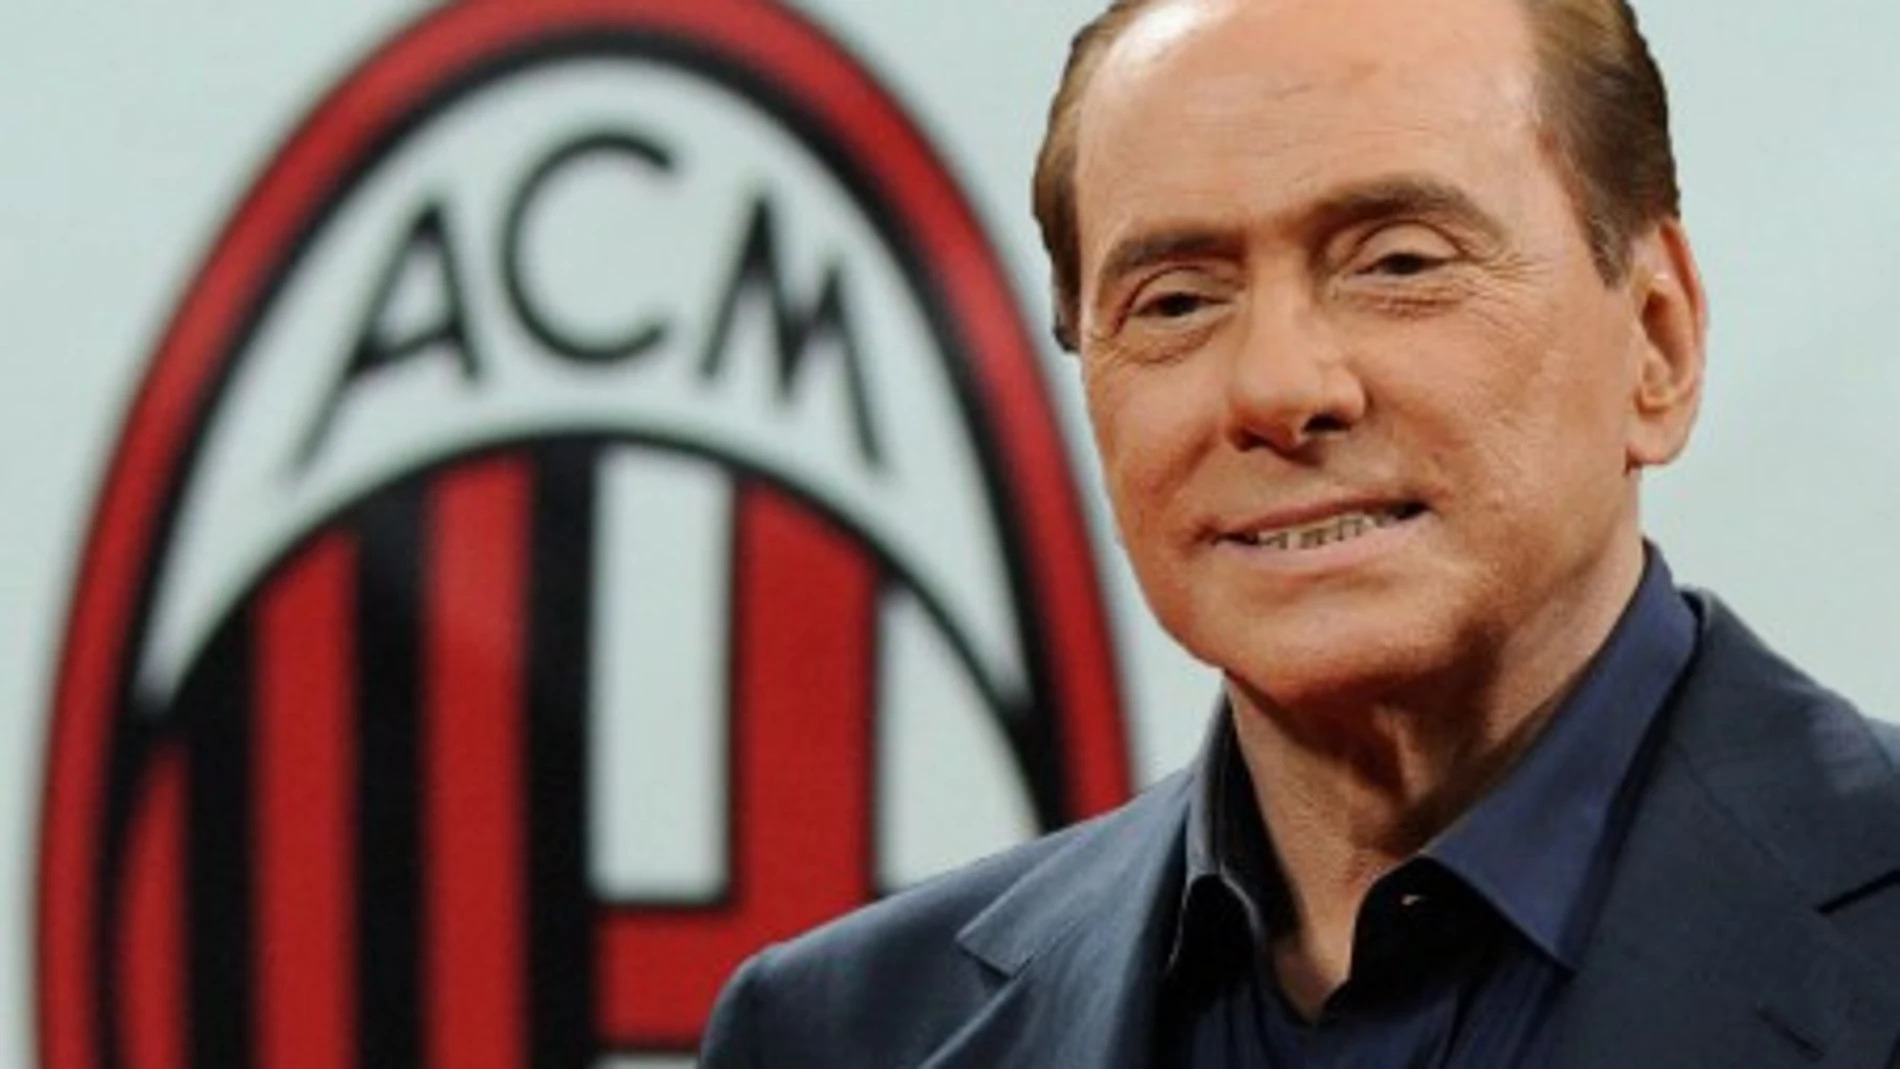 Berlusconi, a punto de vender el Milan a inversores chinos y árabes